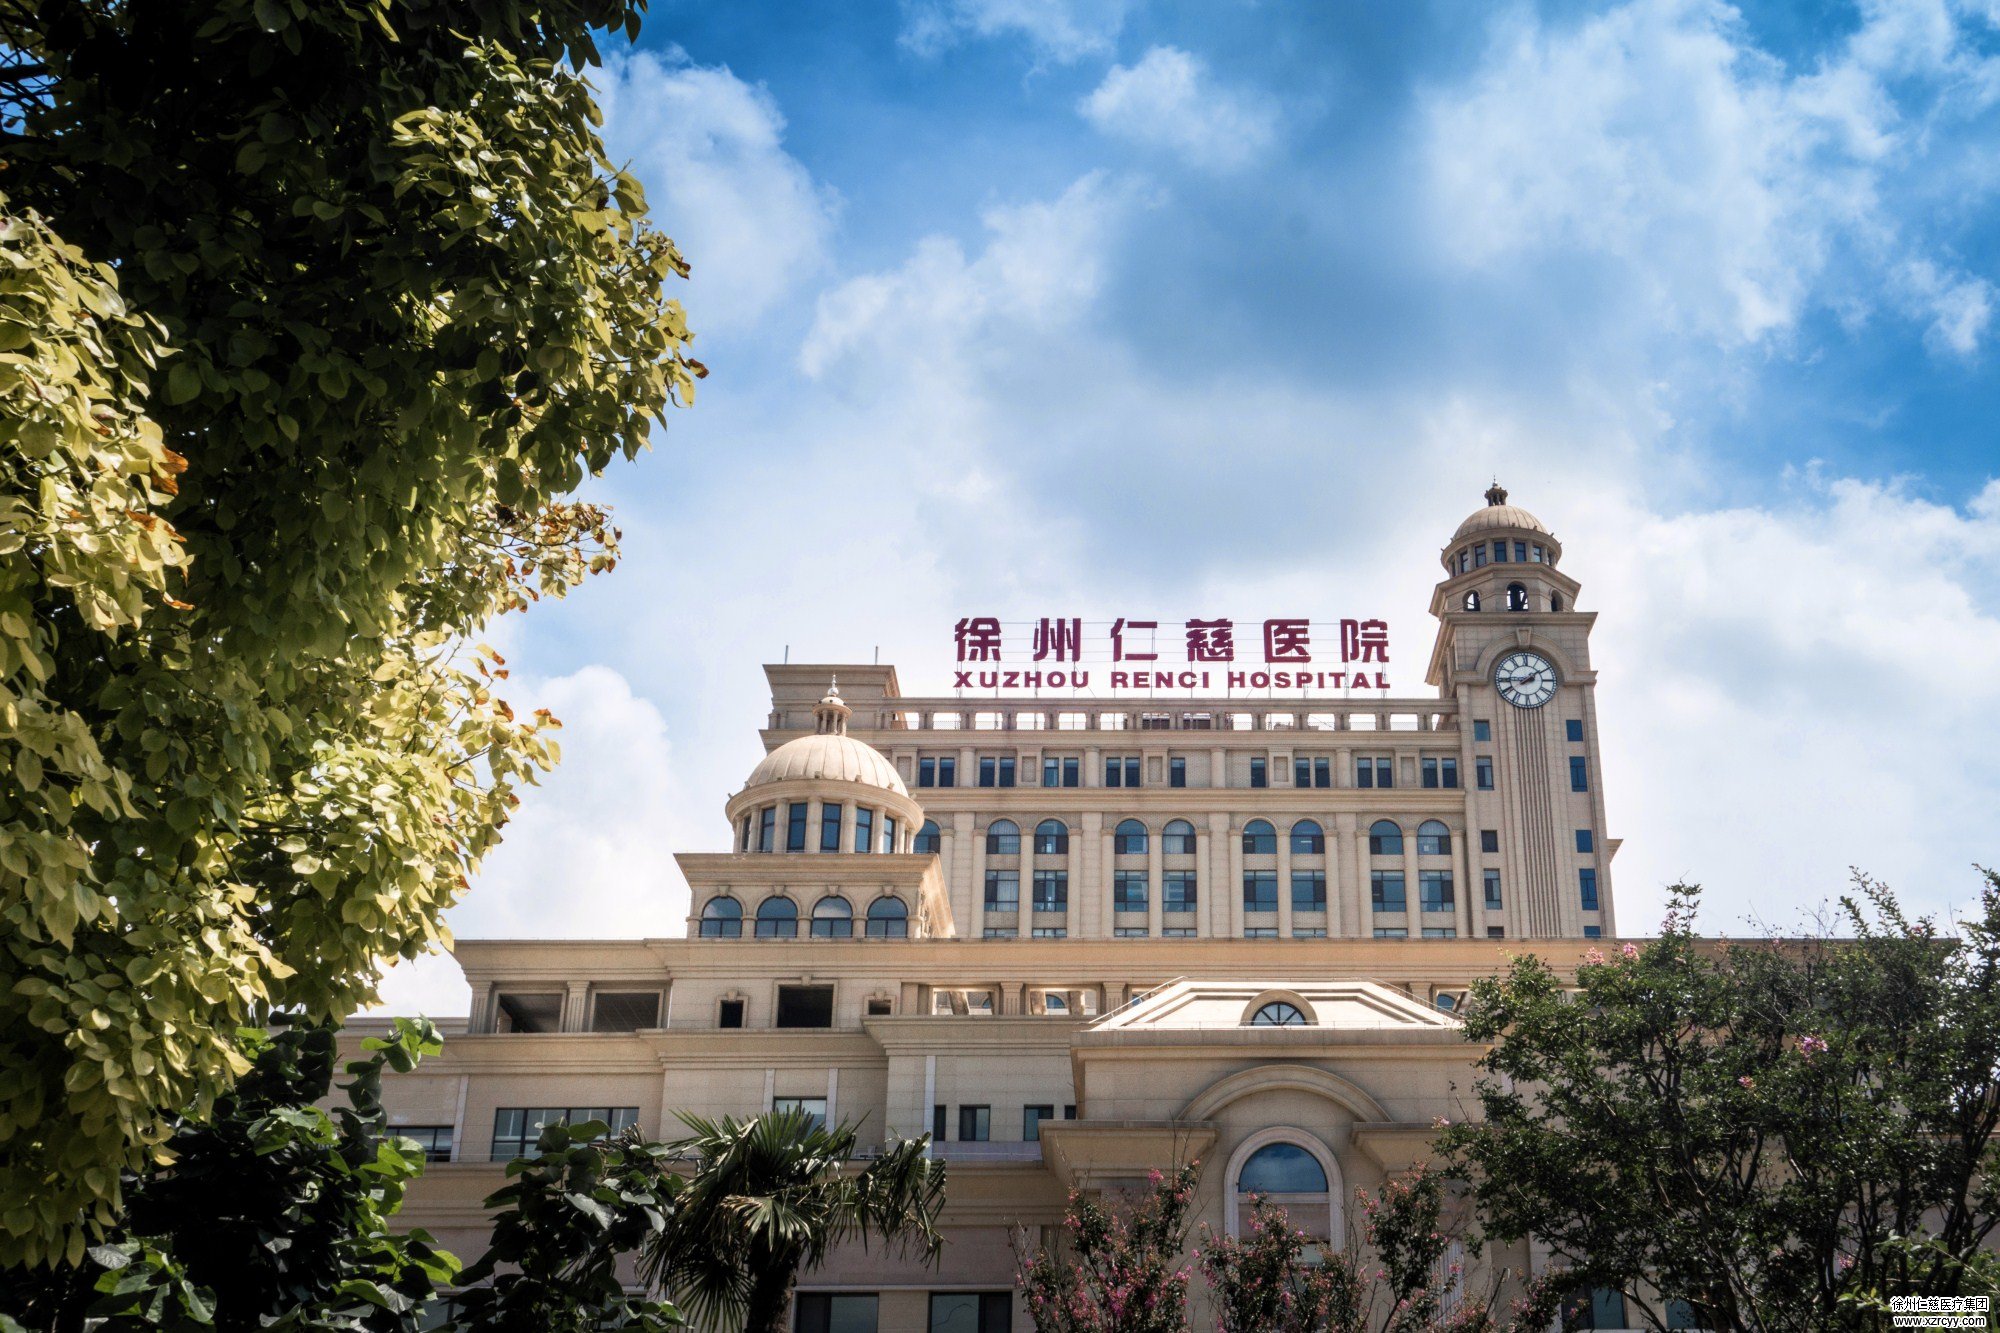 集团之声 | 徐州市第六人民医院介绍 - 徐州市第一人民医院